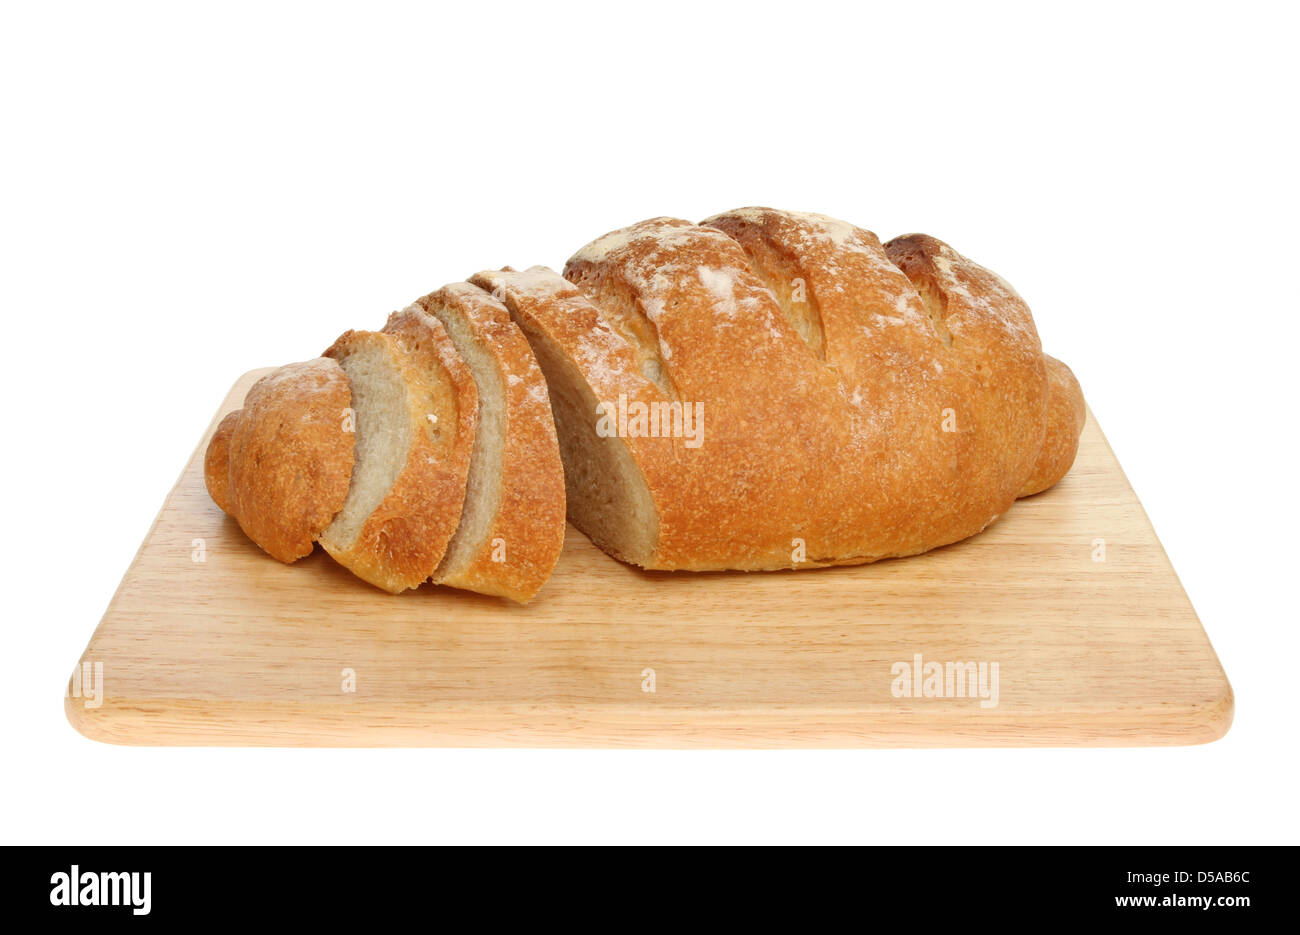 Accueil frais cuit avec des tranches de pain pain Bloomer couper sur une planche en bois isolés contre white Banque D'Images